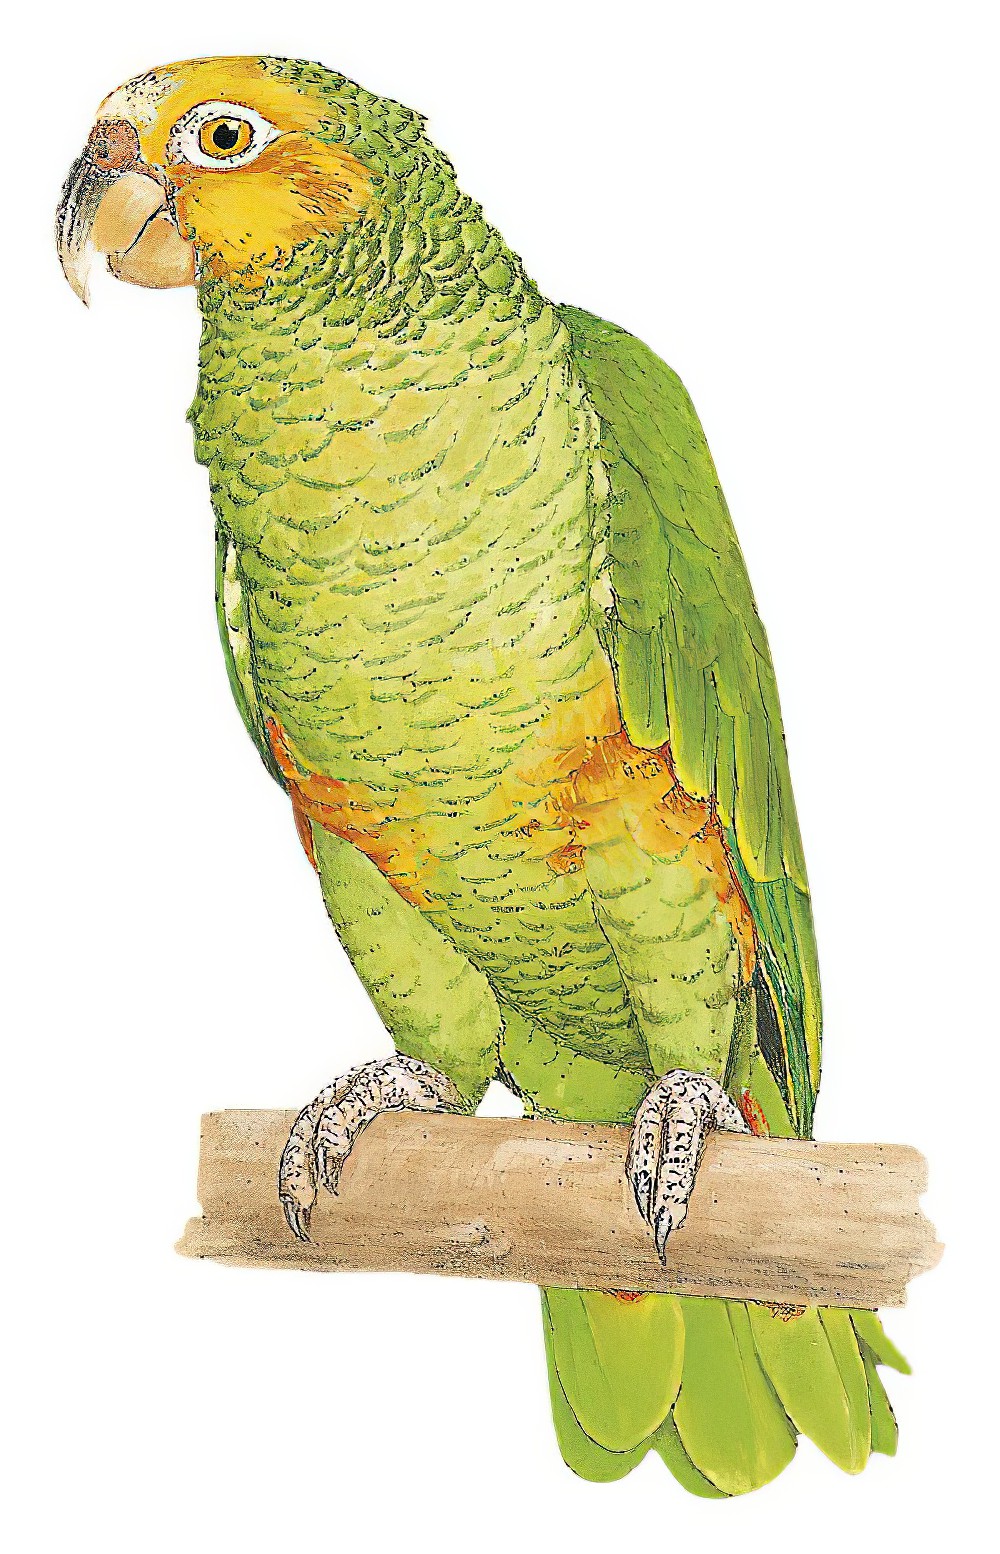 Yellow-faced Parrot / Alipiopsitta xanthops